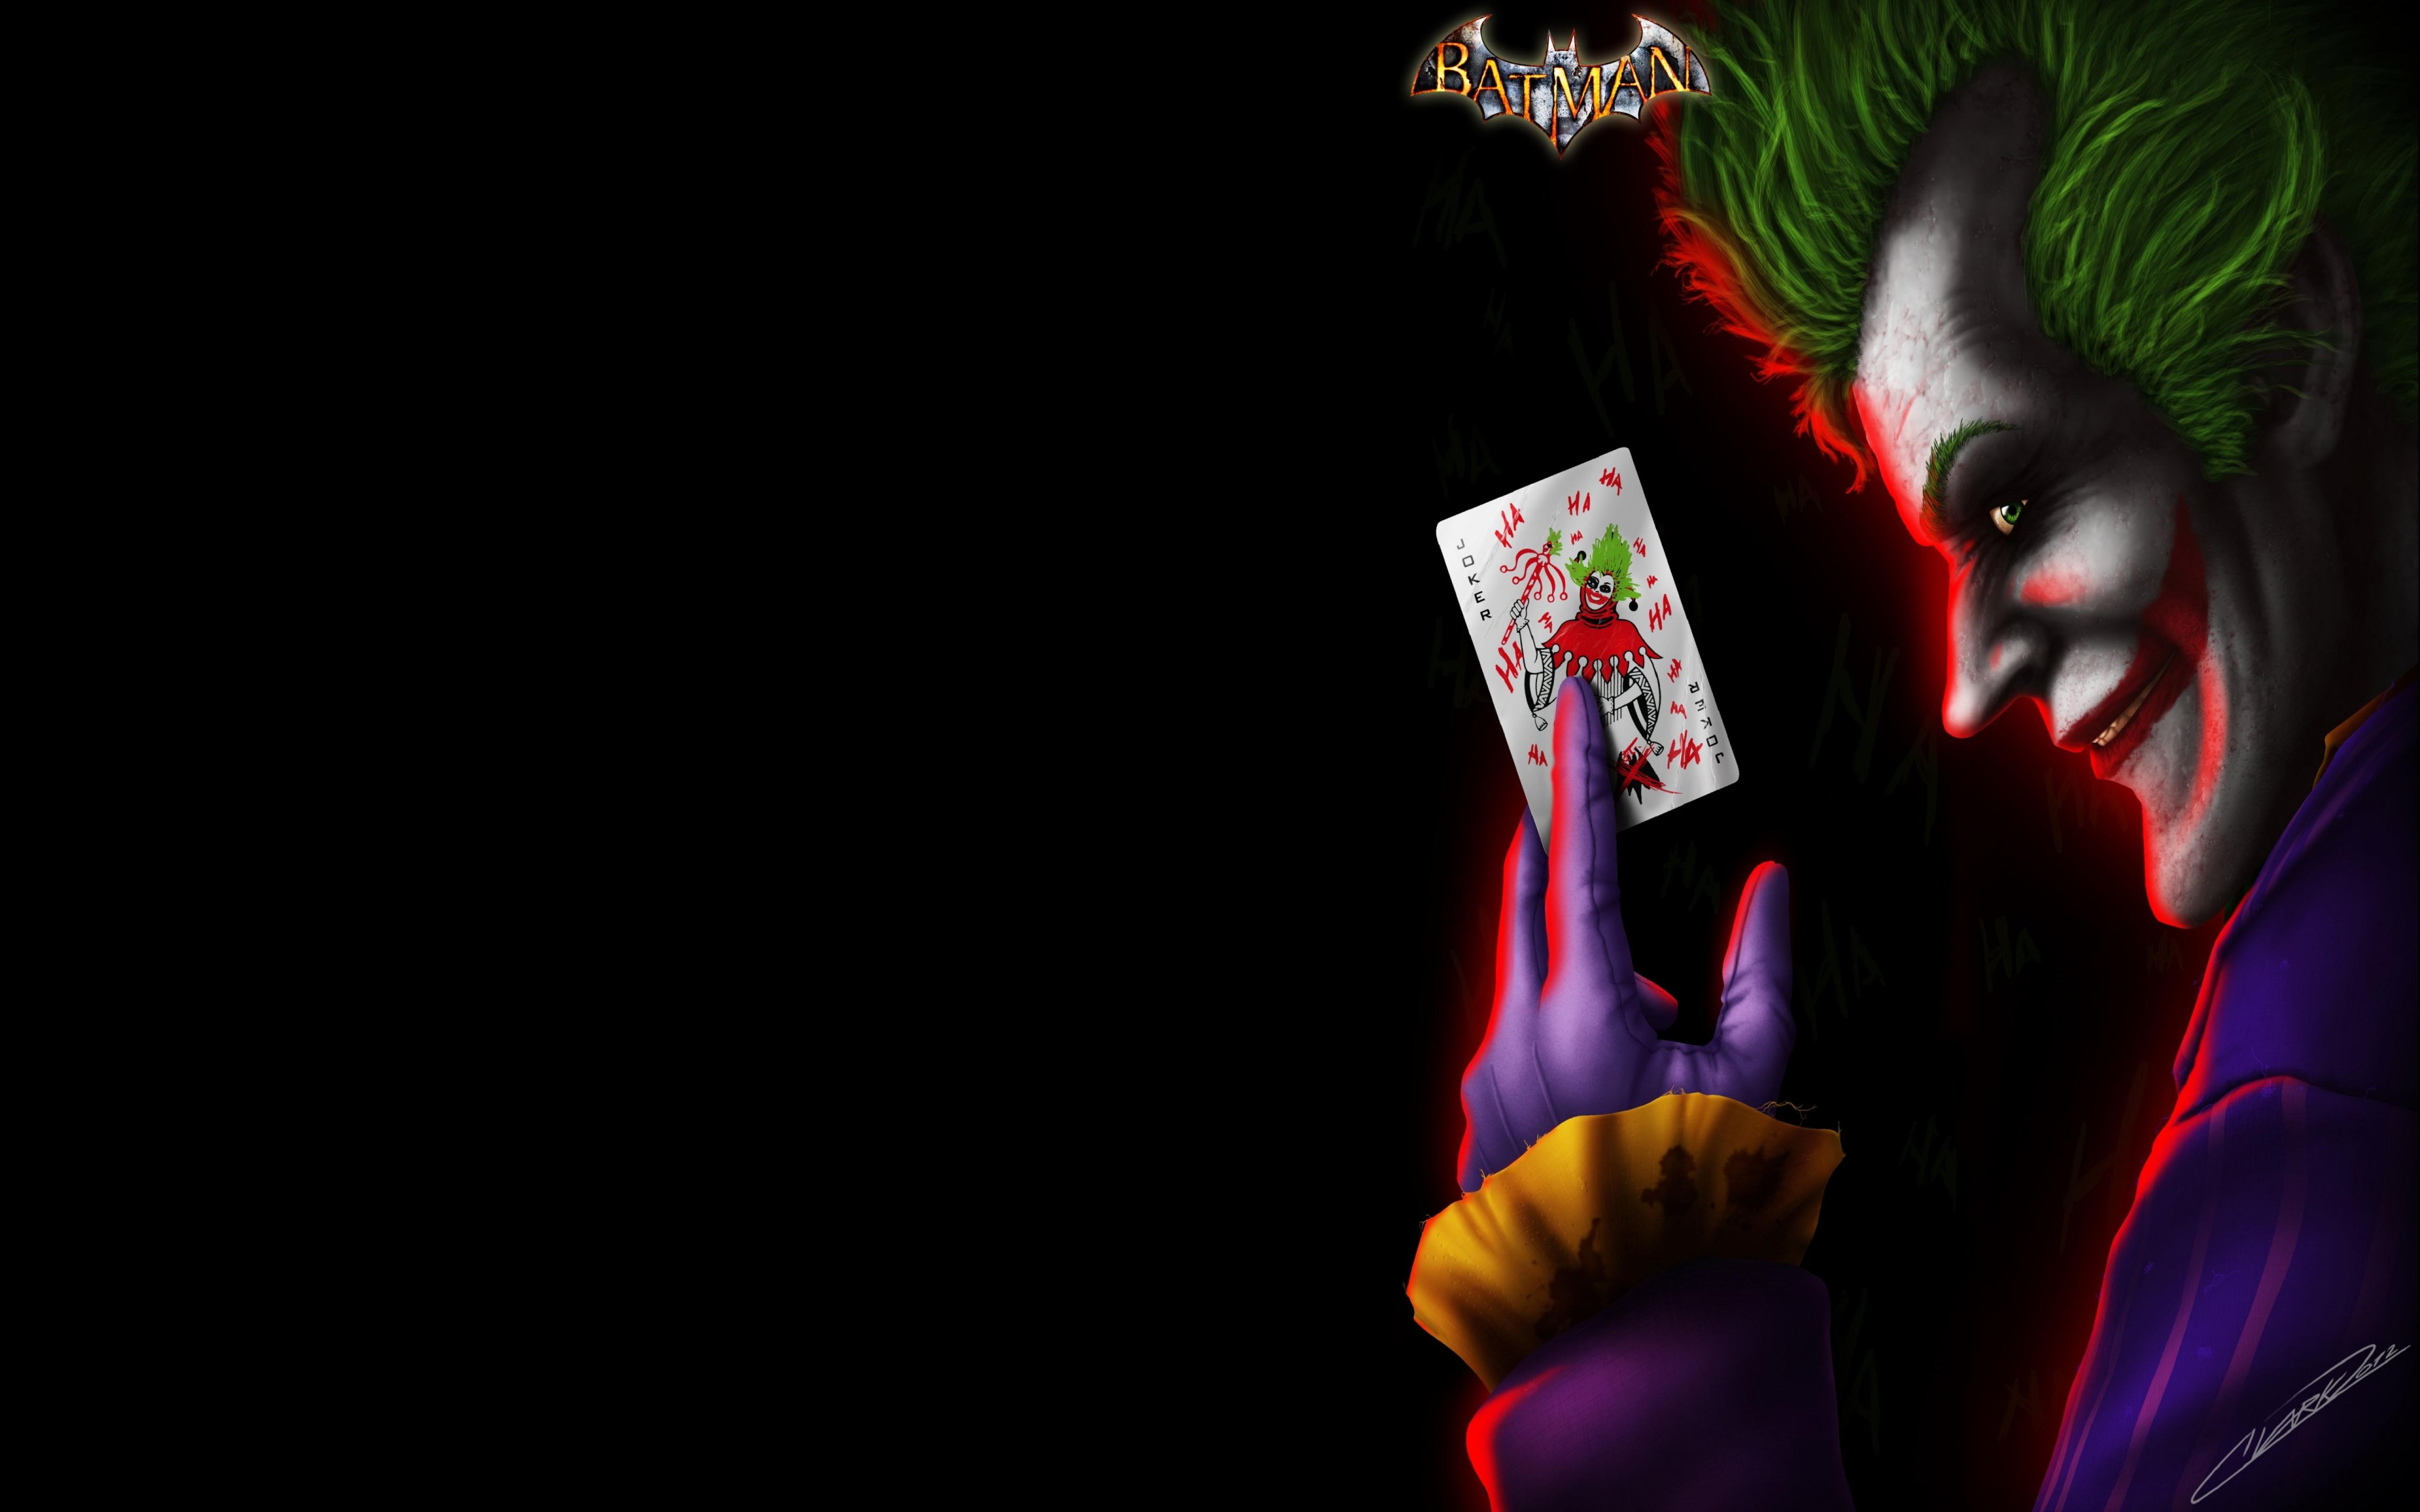 Joker Fan Art, HD Artist, 4k Wallpapers, Images ...